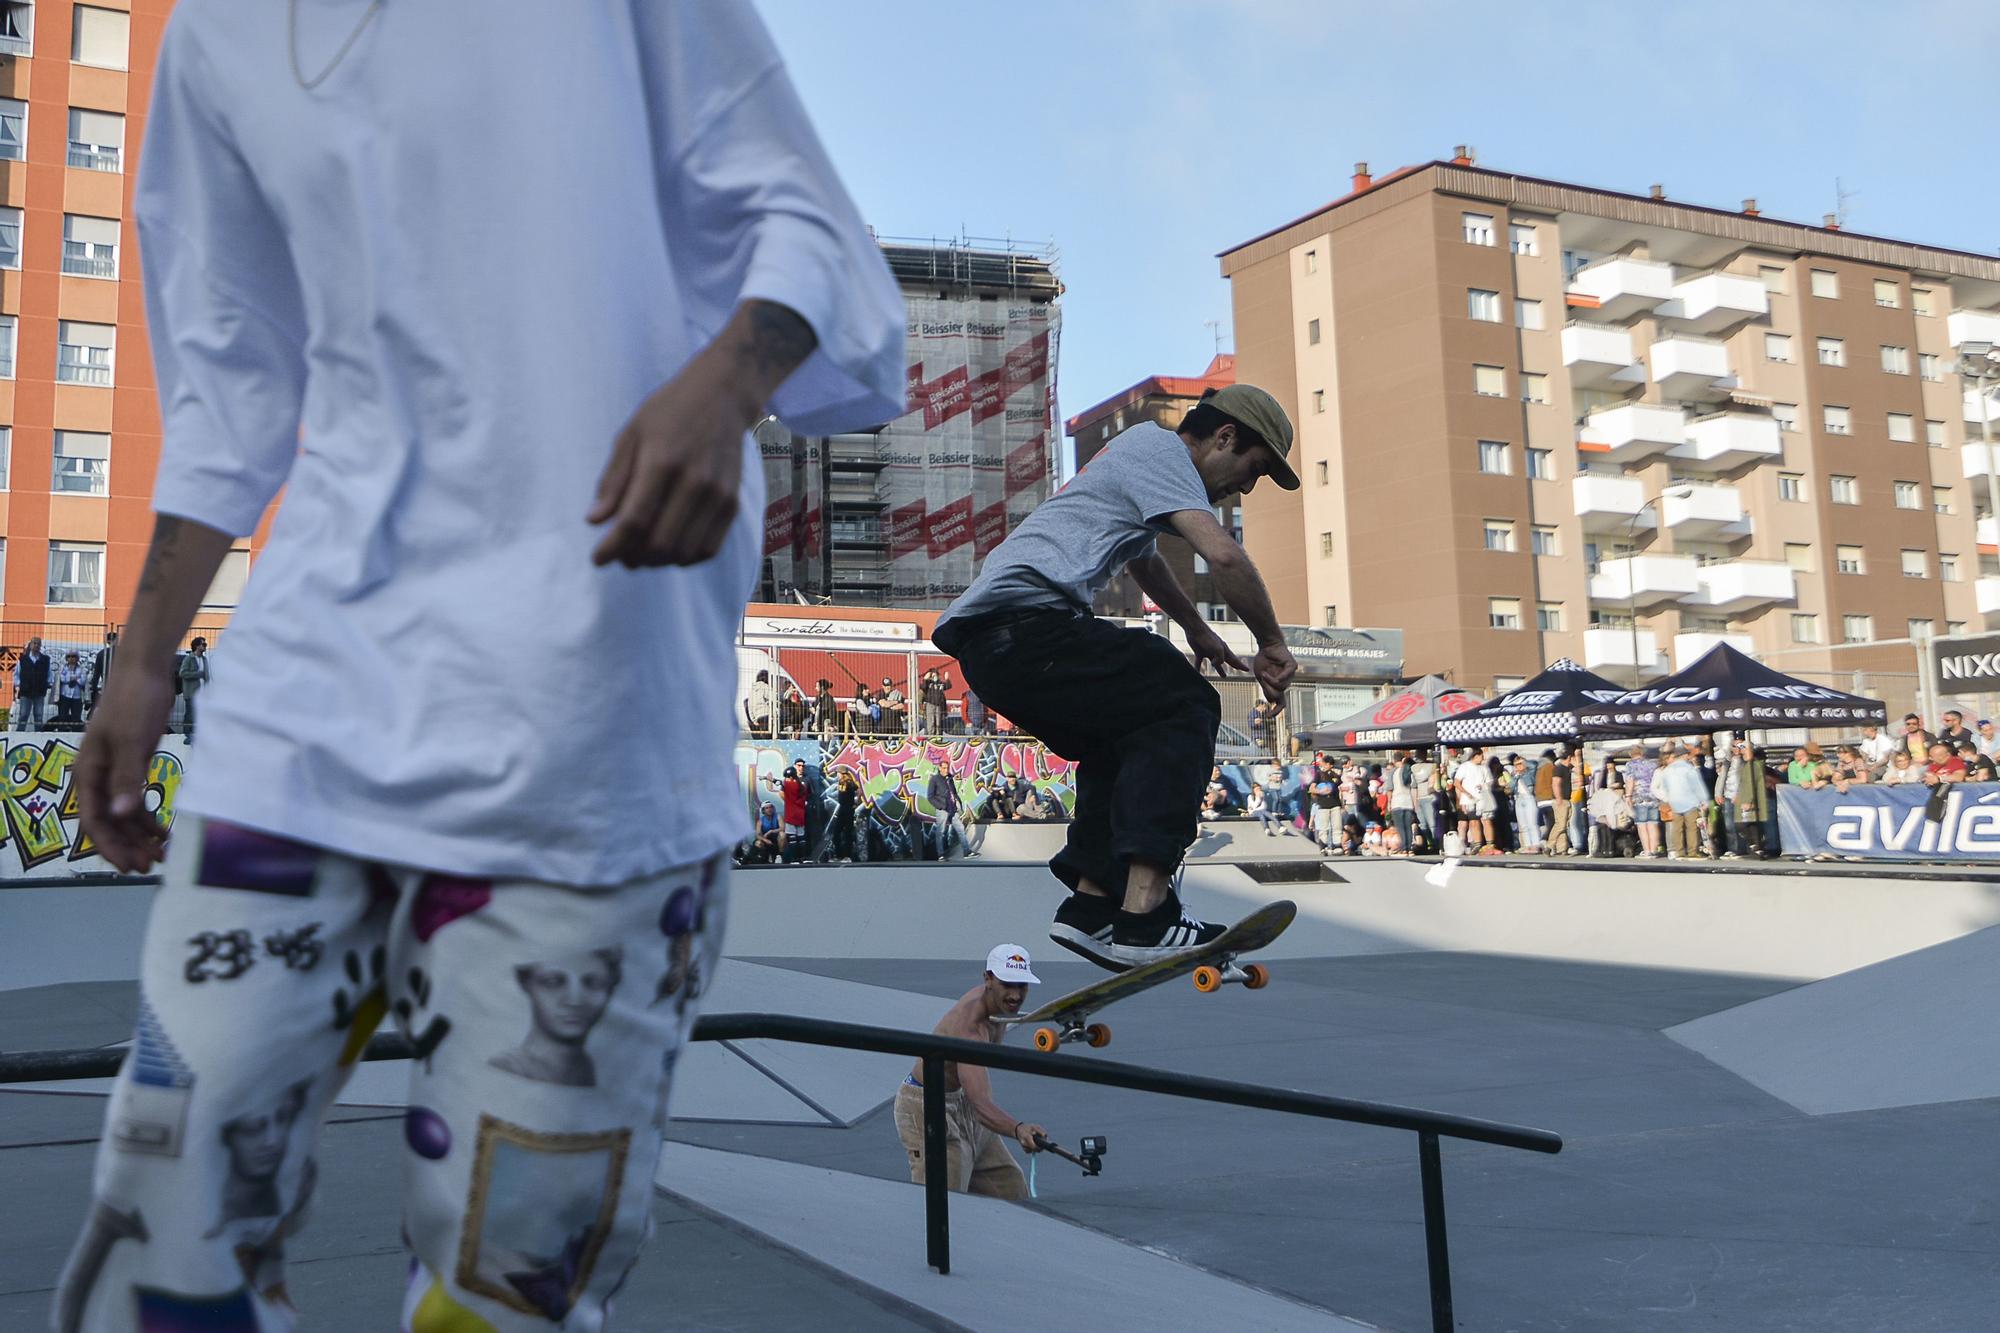 El skate abre las actividades deportivas del Bollo